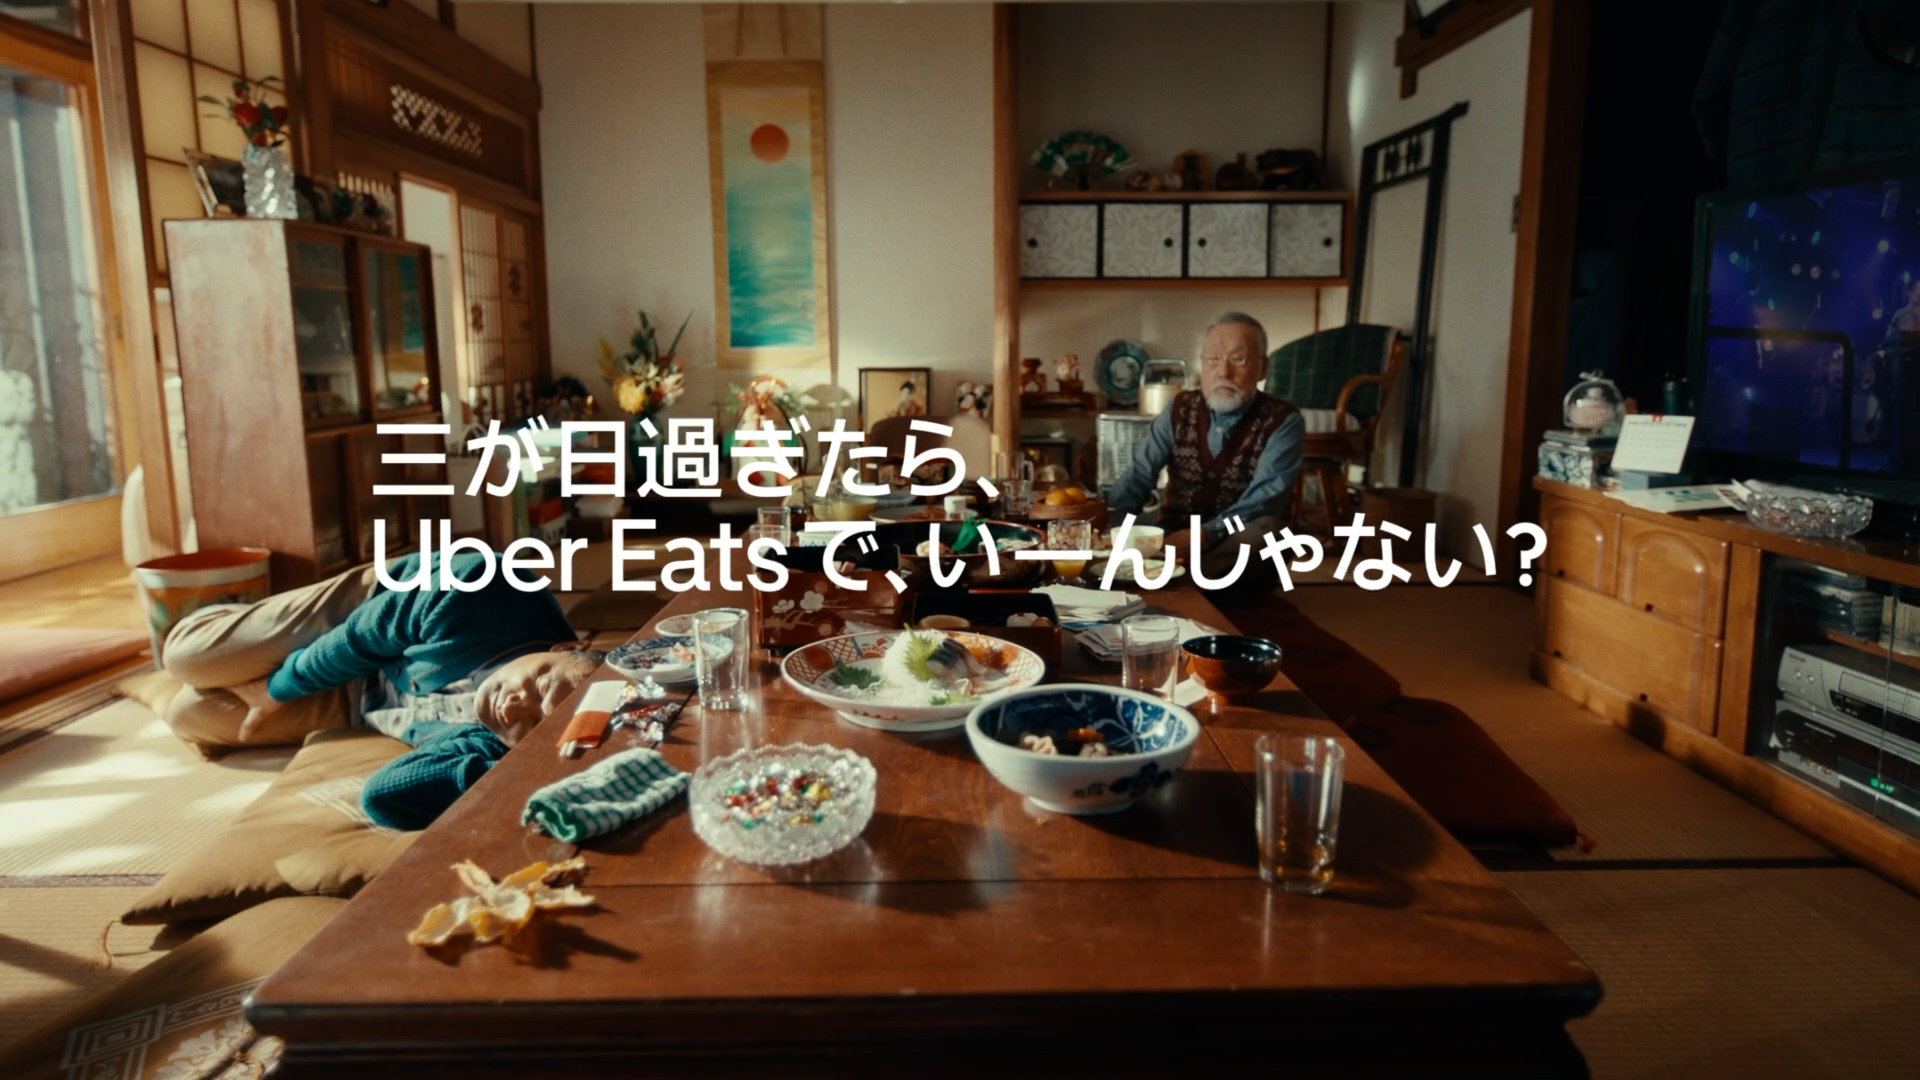  Uber Eats Japan Co., Ltd.